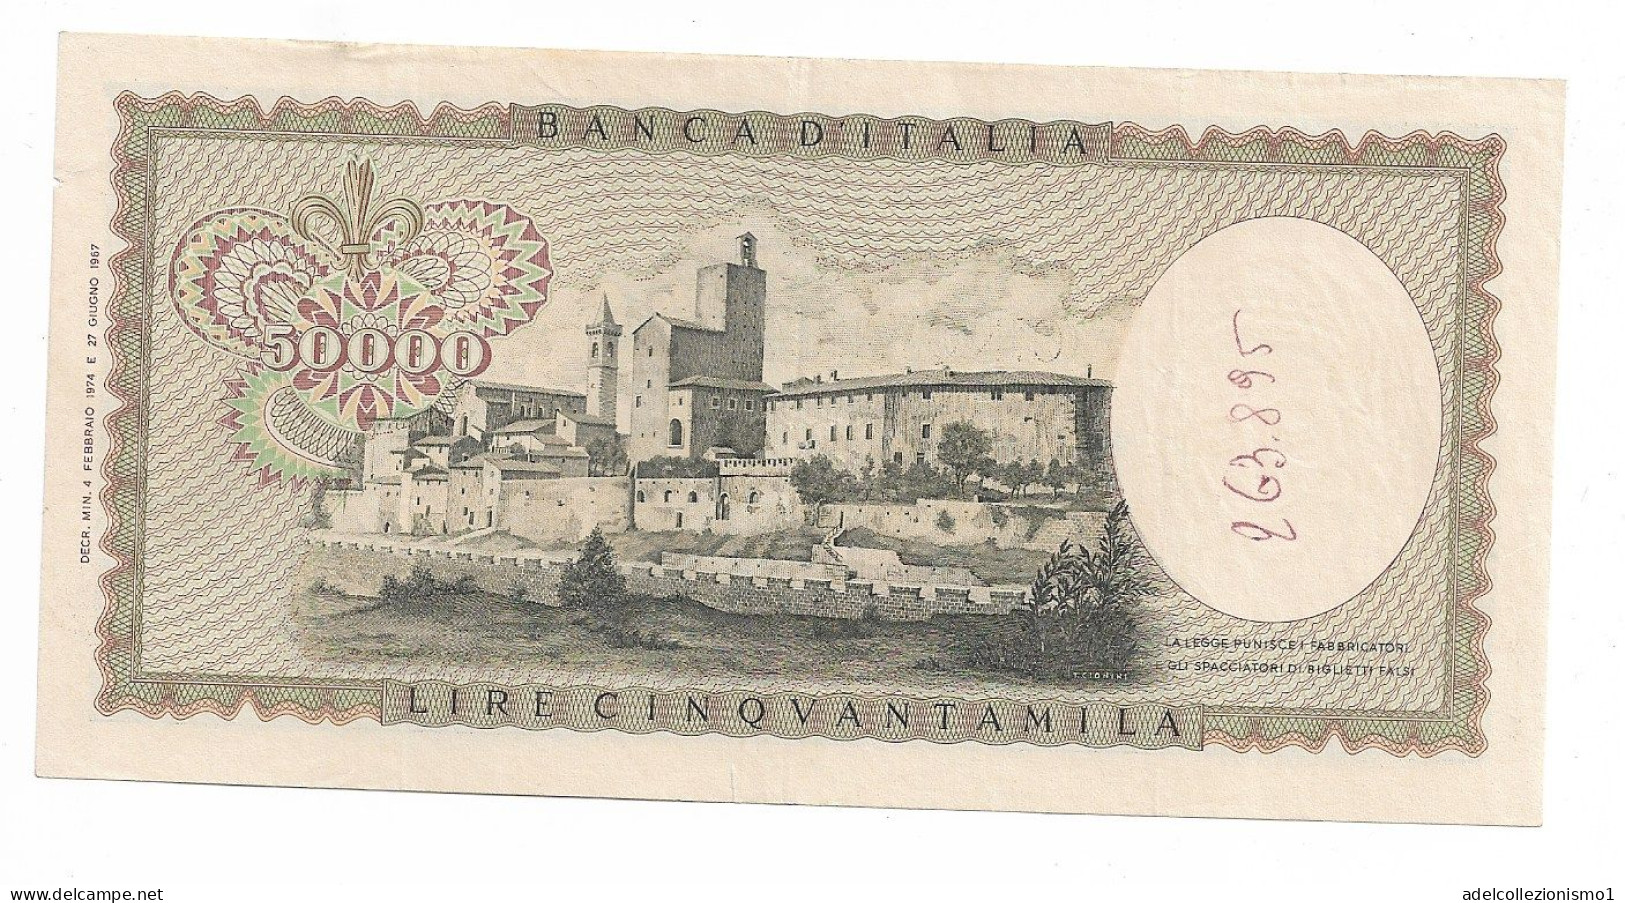 49487) BANCONOTA DA 50000 LIRE BANCA D'ITALIA LEONARDO DA VINCI 4/2/1974 - 50000 Liras